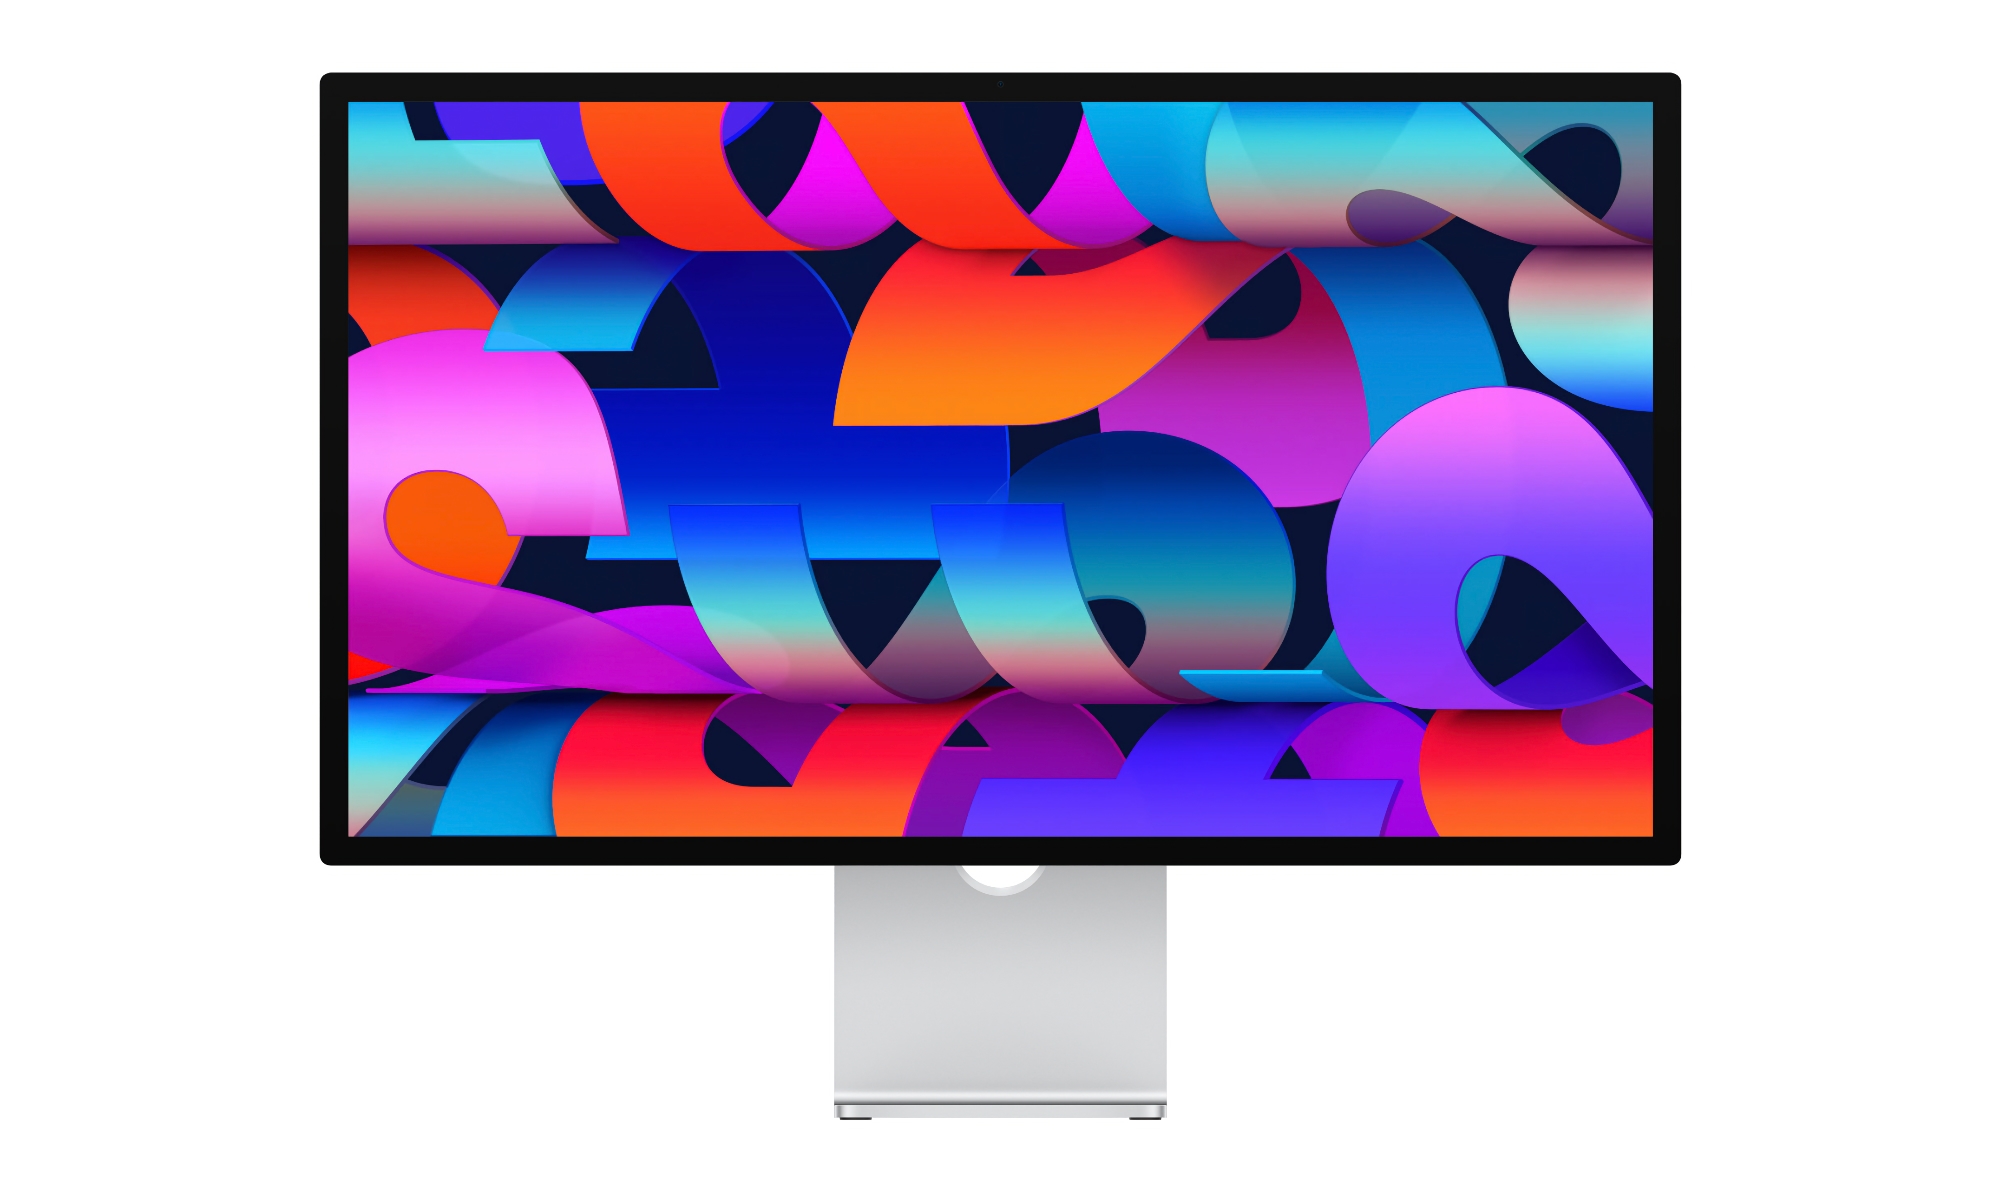 Apple Studio Display bei Amazon: 27-Zoll-Monitor mit 5K-Auflösung, 600 nits Helligkeit und True Tone Funktion für 300 $ weniger